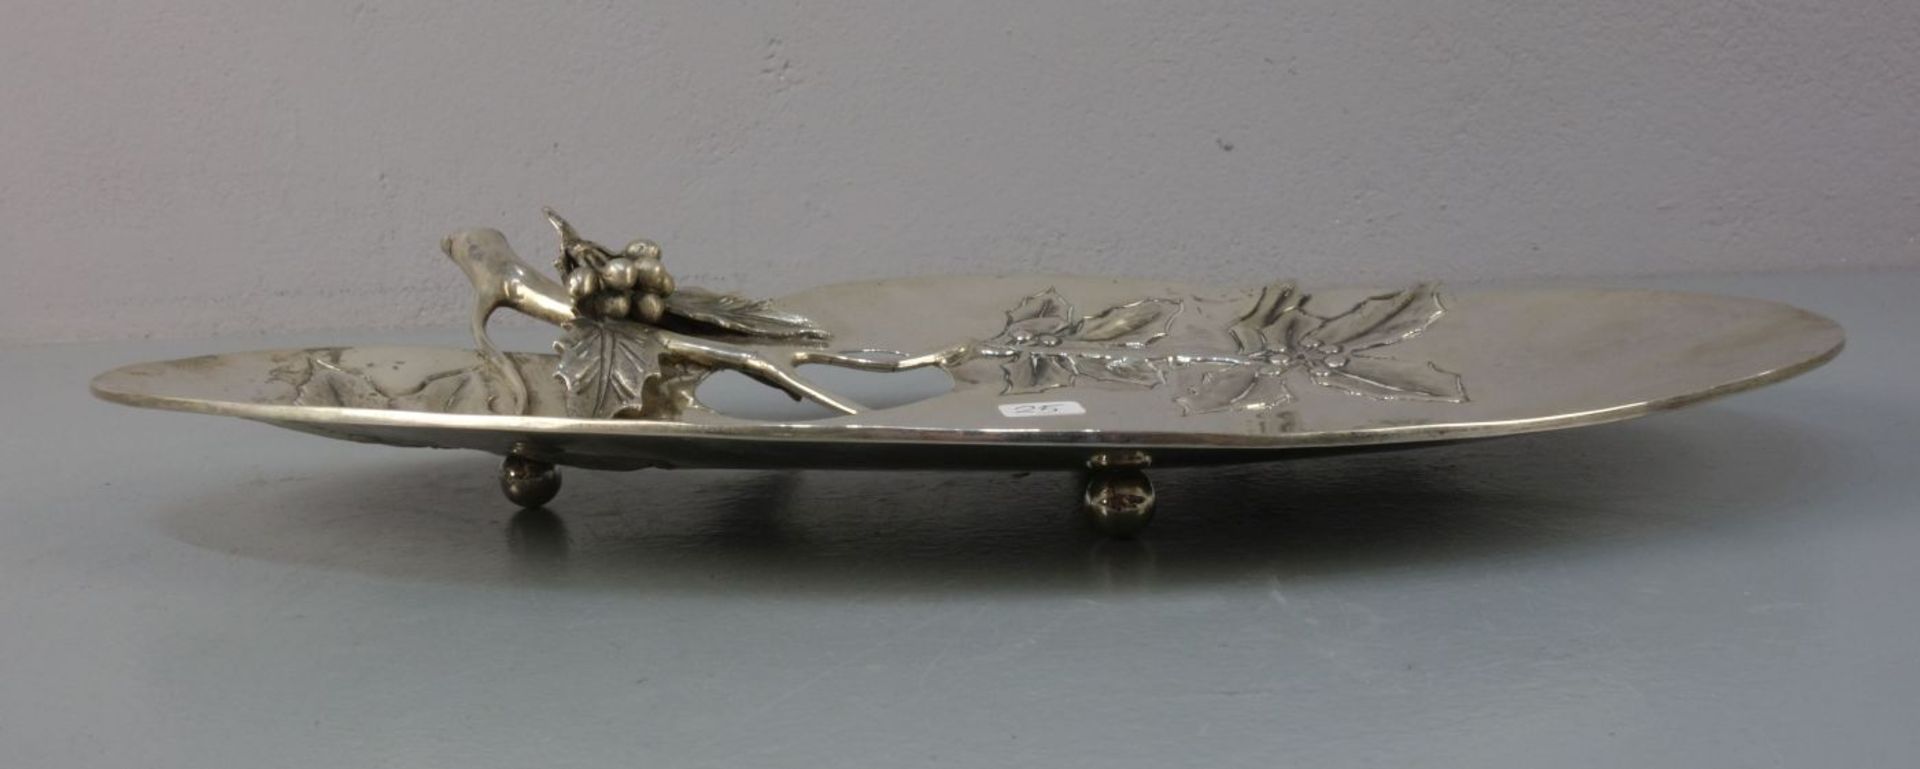 SILBERNE SCHALE MIT ILEXDEKOR im Stil des Jugendstils / silver bowl with holly motif, 900 Silber ( - Bild 2 aus 3